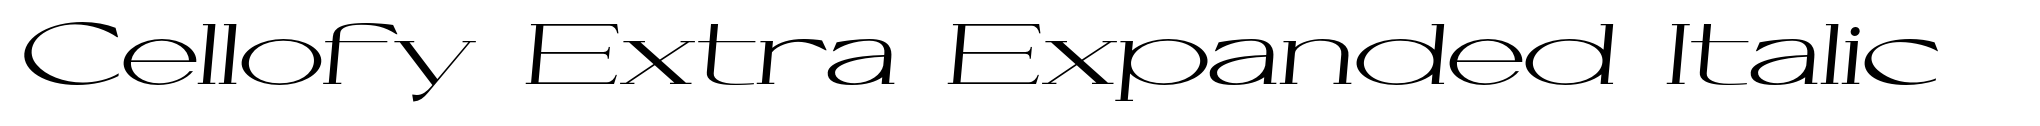 Cellofy Extra Expanded Italic image